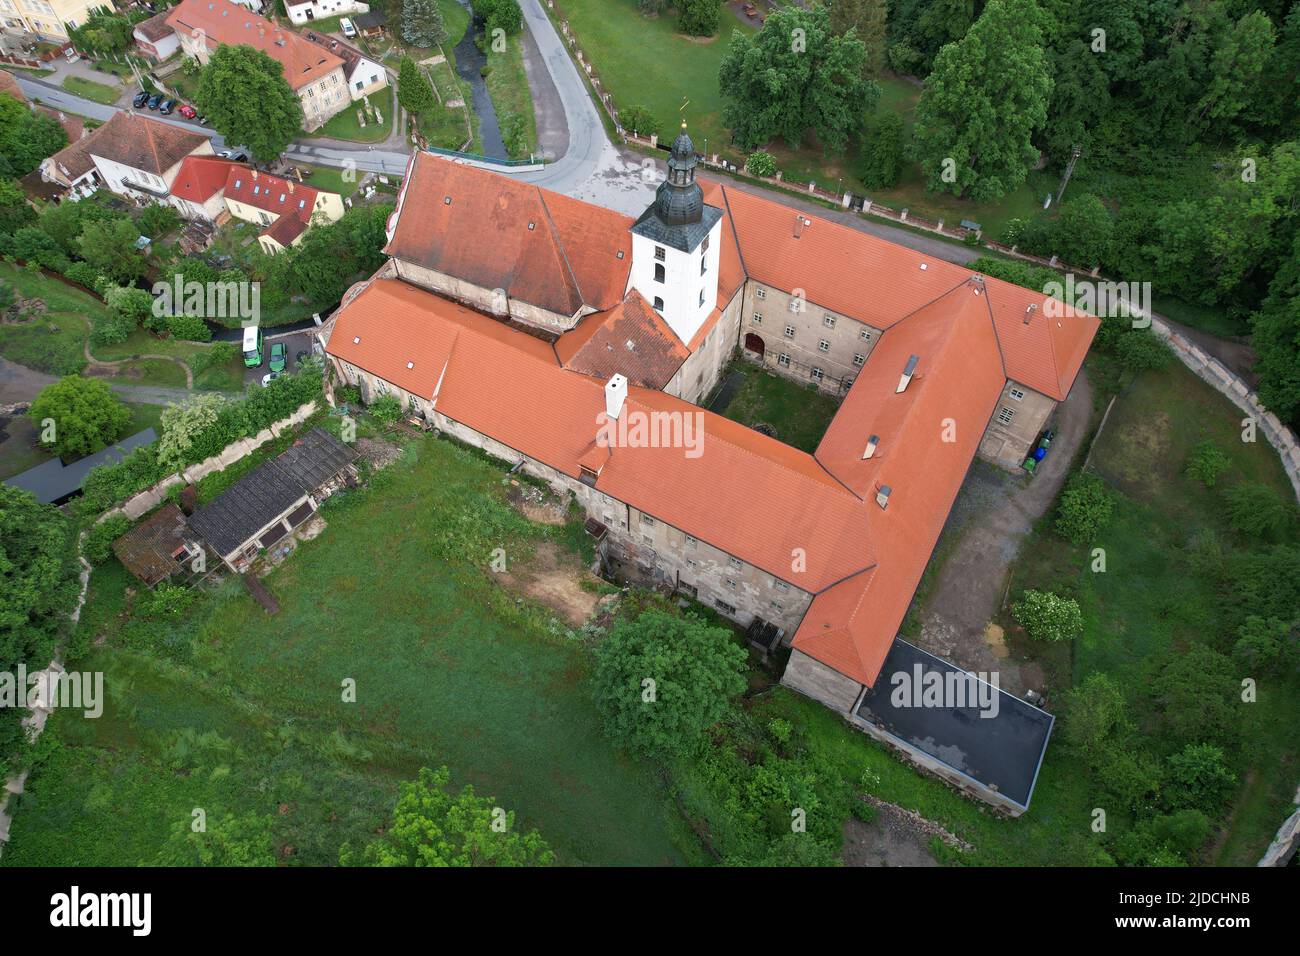 Svaty Jan pod Skalou - ein kleines Dorf in Tschechien, Europa, Kloster Svaty Jan pod Skalou Stockfoto